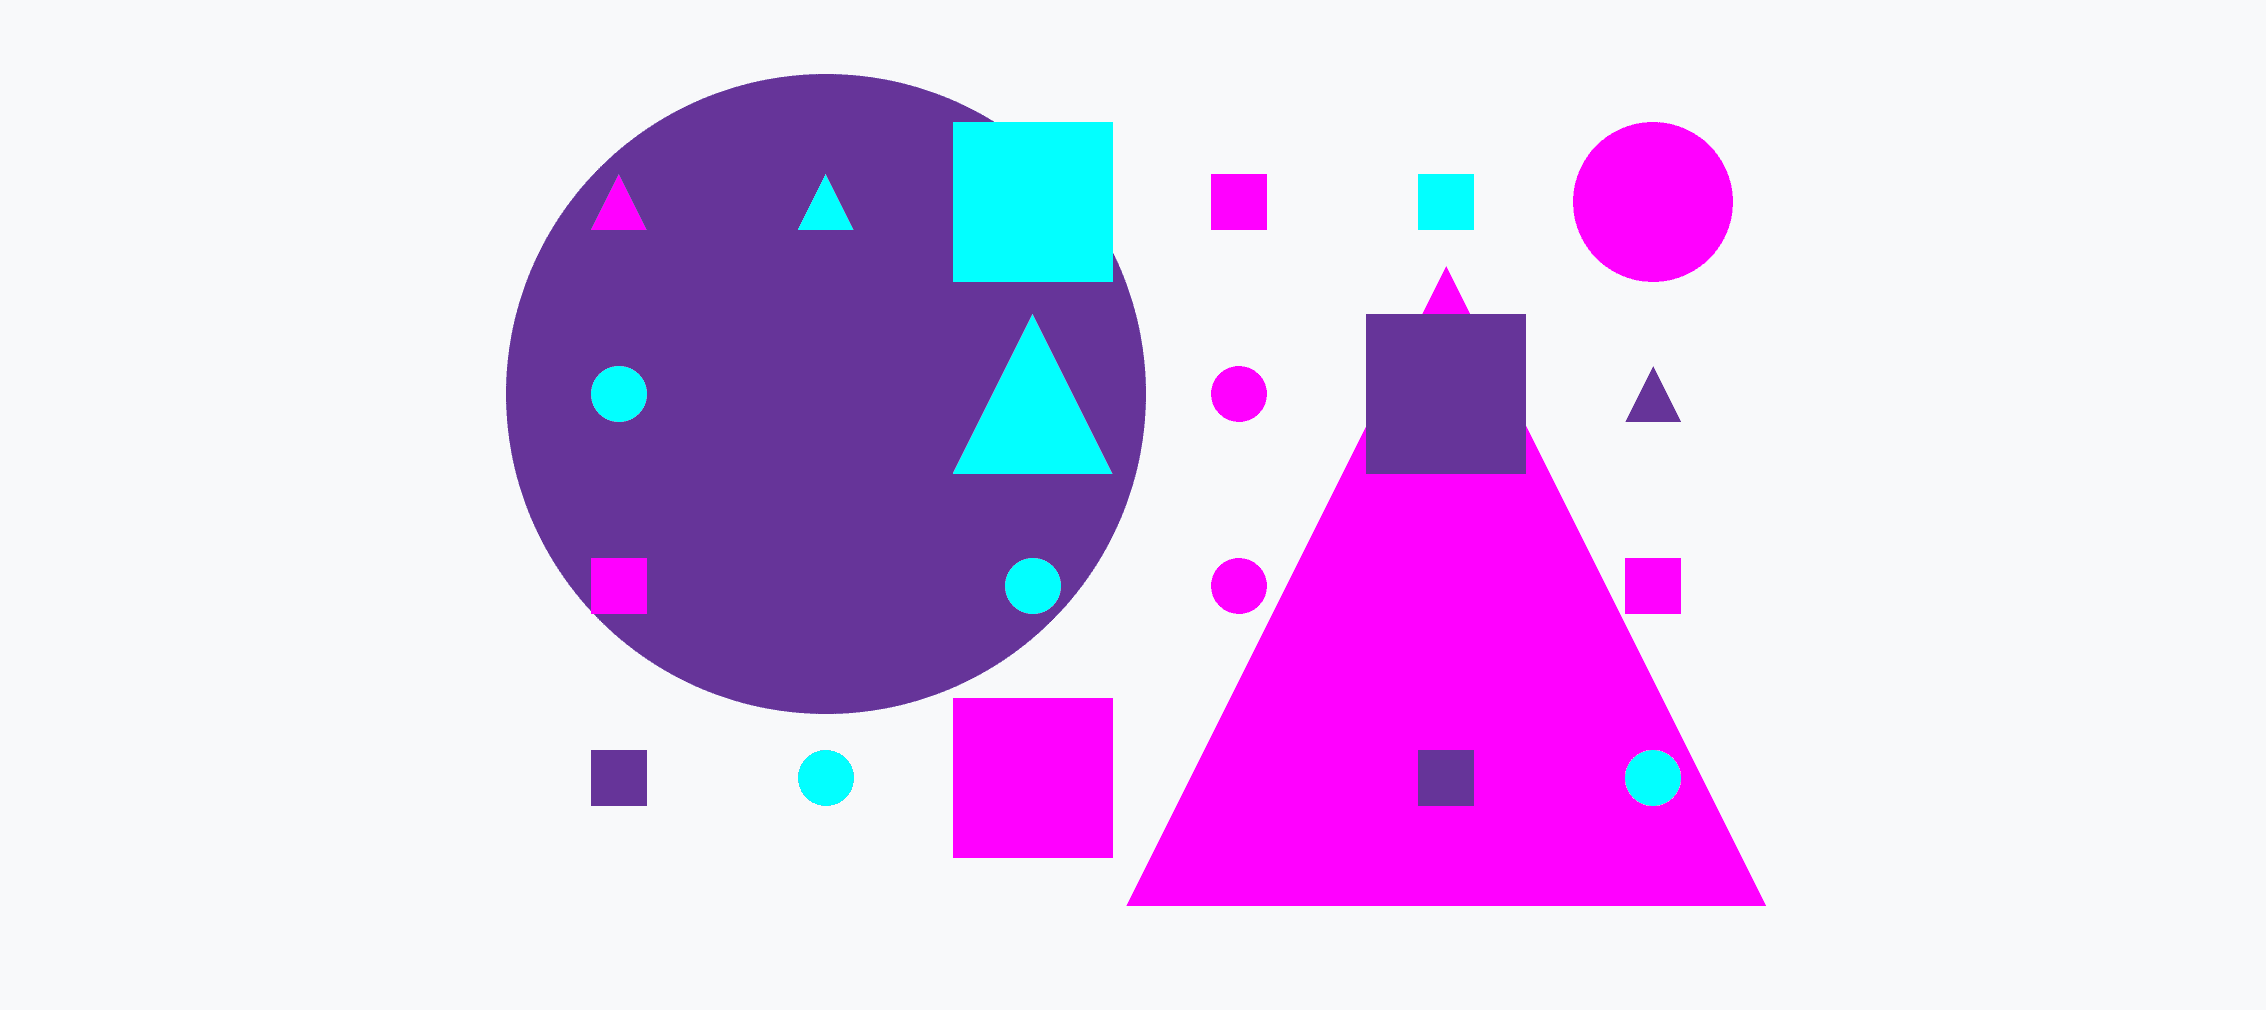 Uma grade colorida de círculos, triângulos e quadrados pequenos e grandes.